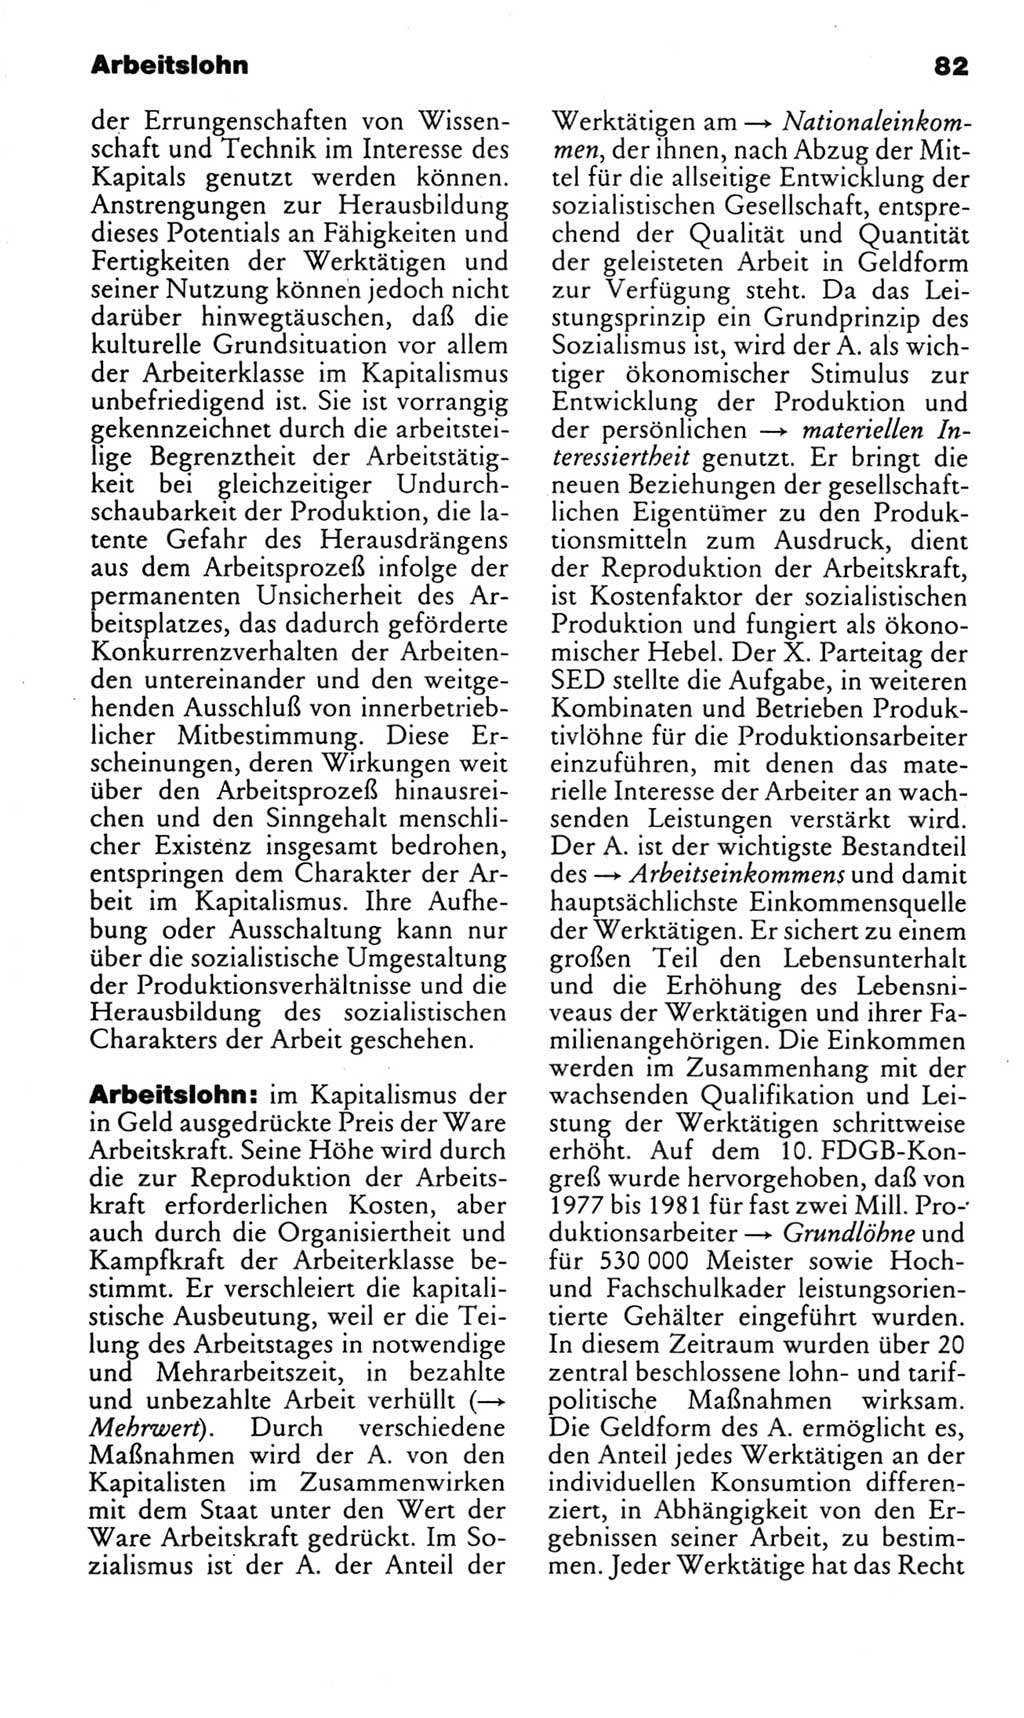 Kleines politisches Wörterbuch [Deutsche Demokratische Republik (DDR)] 1983, Seite 82 (Kl. pol. Wb. DDR 1983, S. 82)